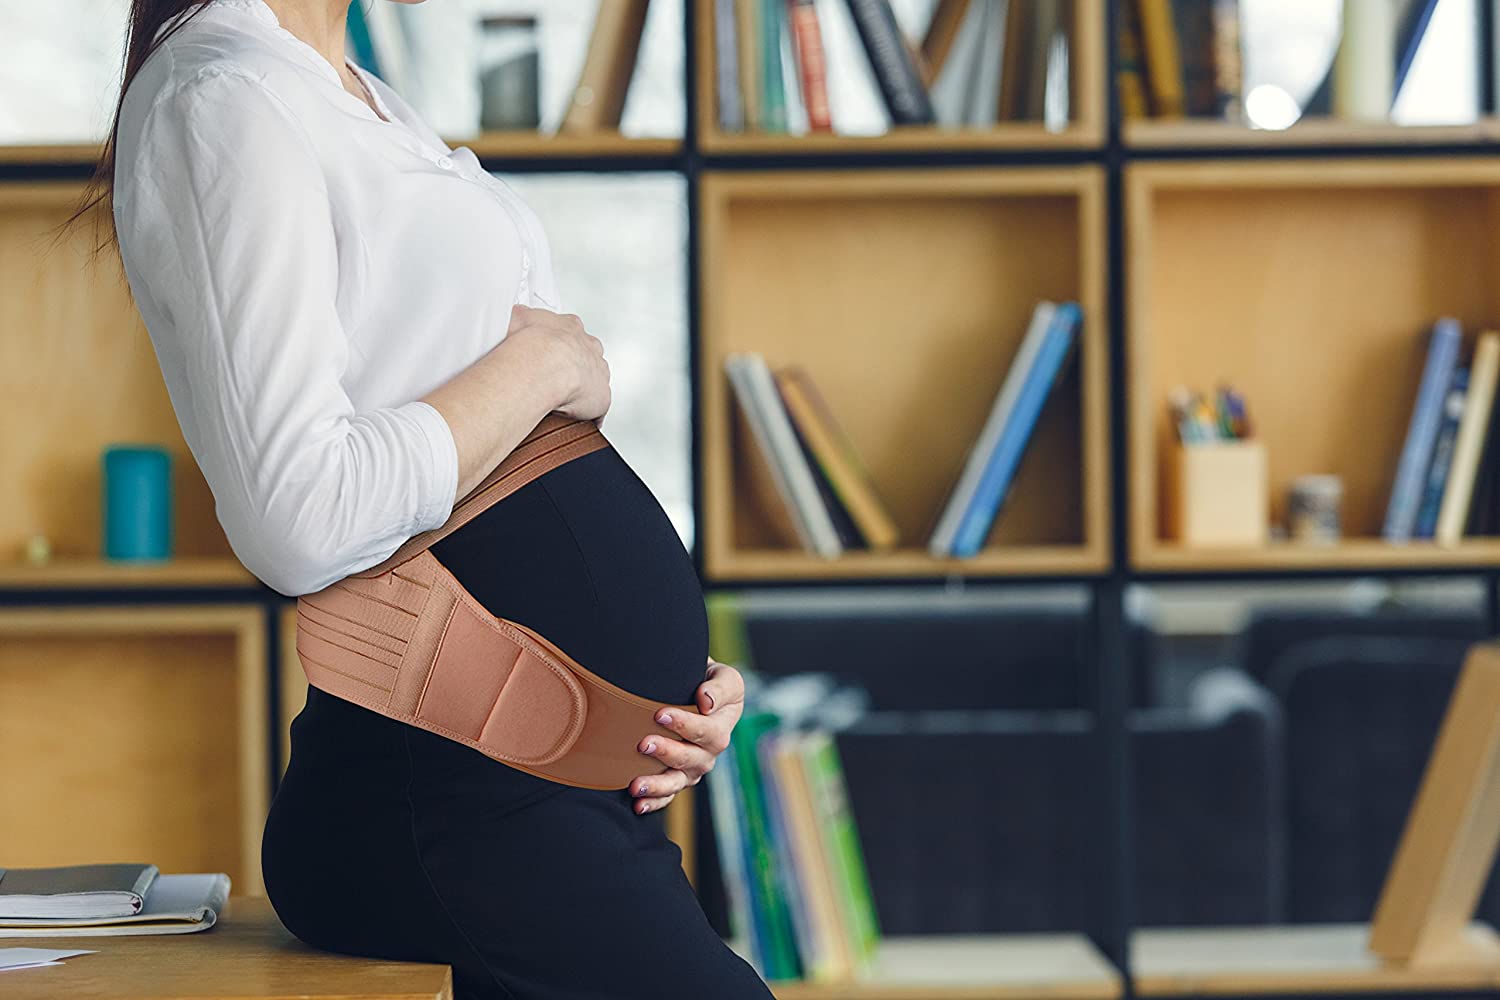 Belly Band for Pregnancy, Pregnancy Belt - Maternity Belt for Back Pain  Prenatal - Pregnancy Support Belt with Adjustable/Breathable Material Back